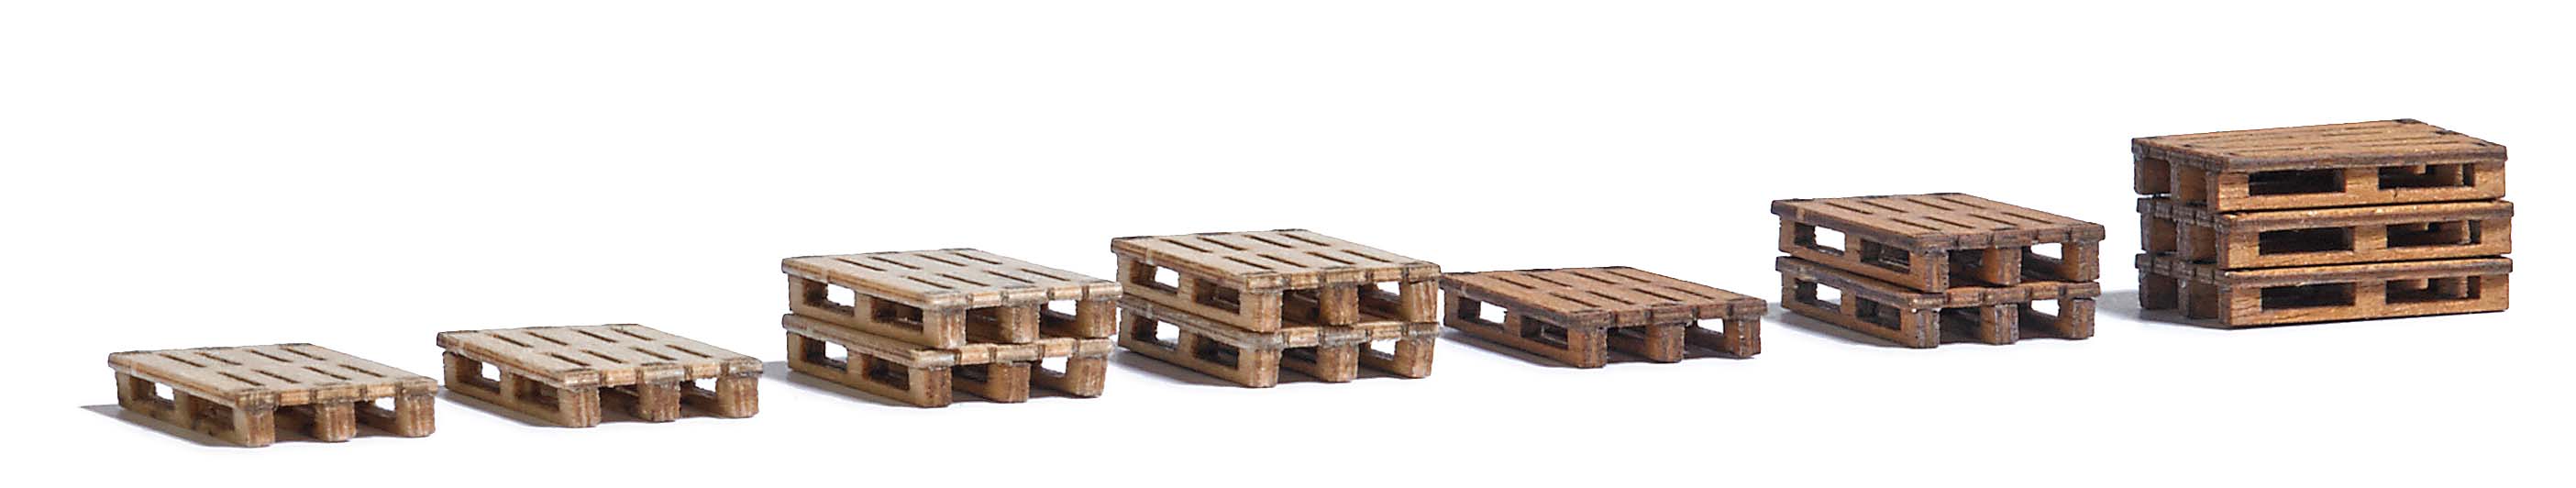 Busch 1810 H0 Echt houten pallets